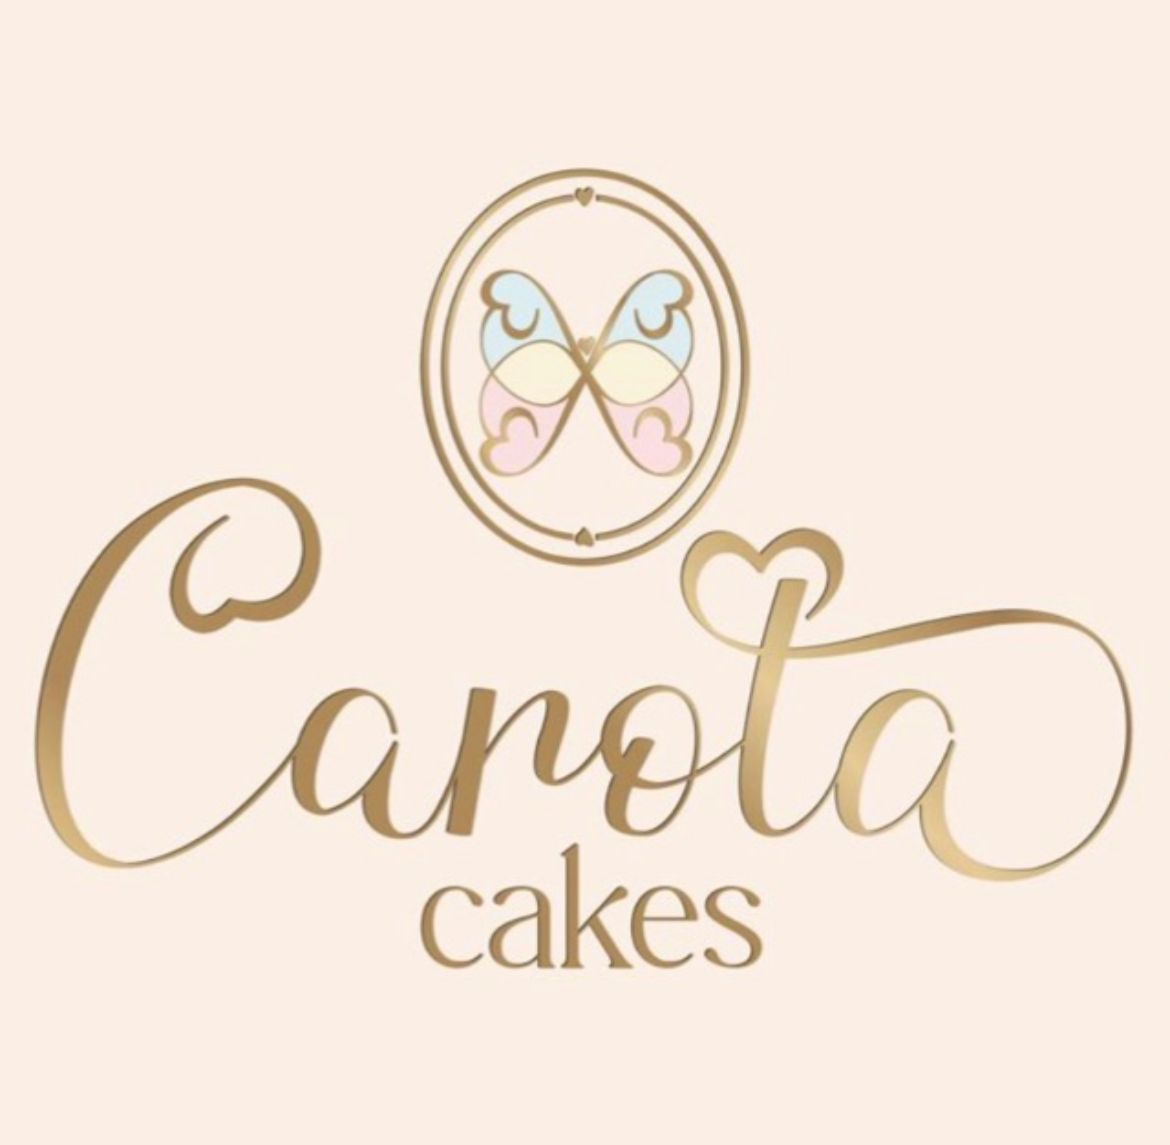 Carota Cakes